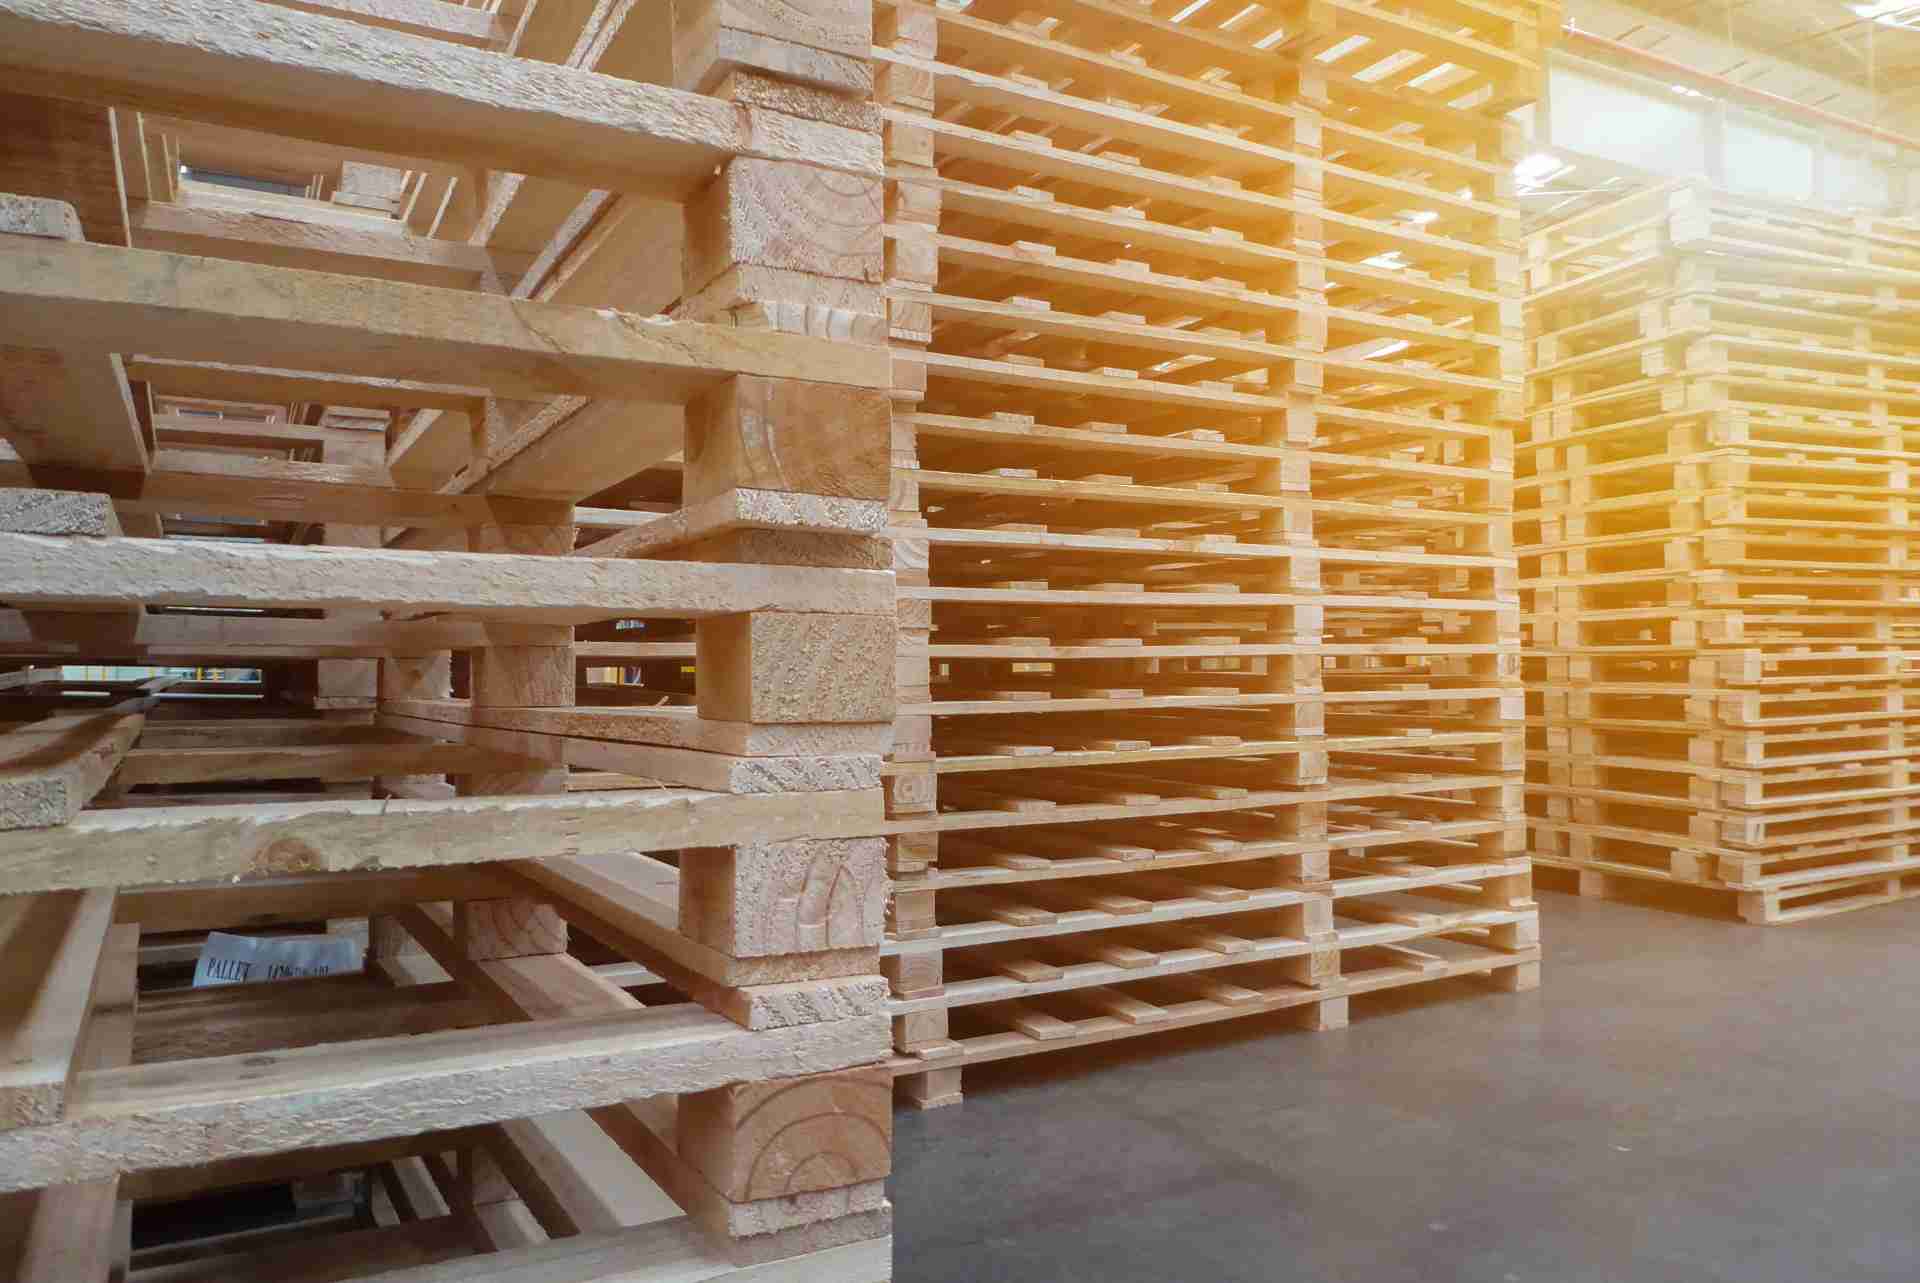 Pallets de madera (medidas y tipos) 